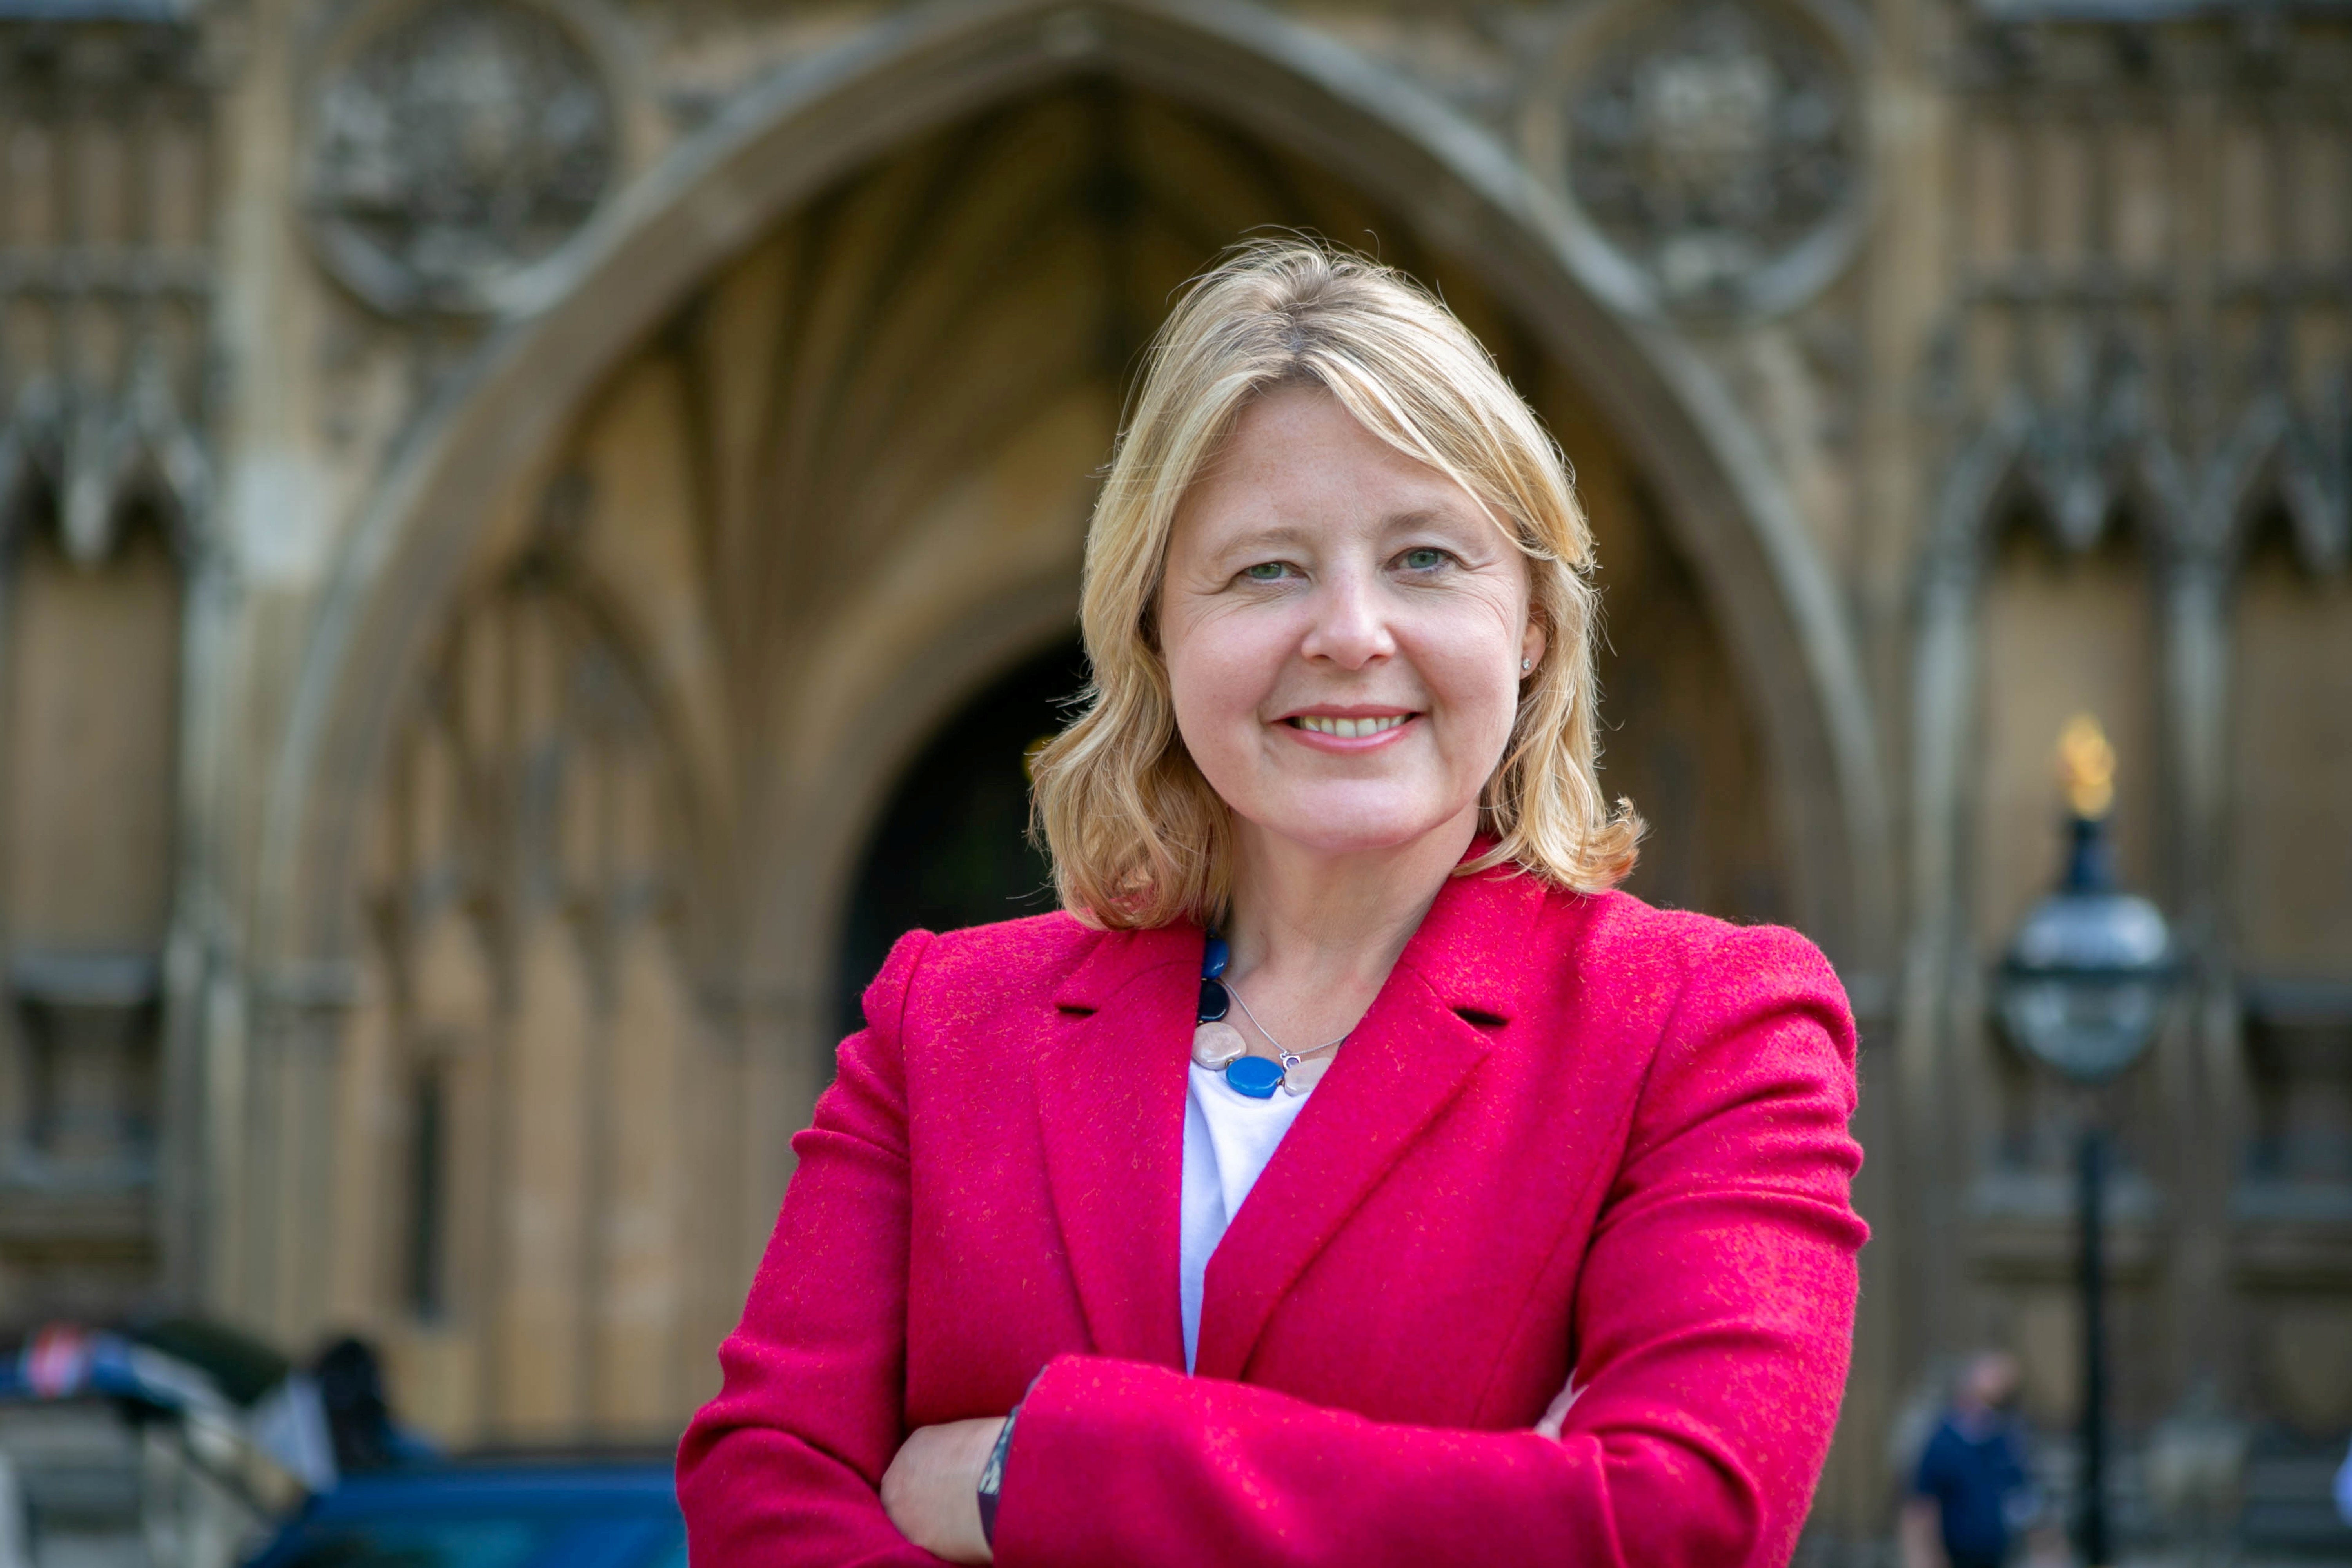 MP Nickie Aiken